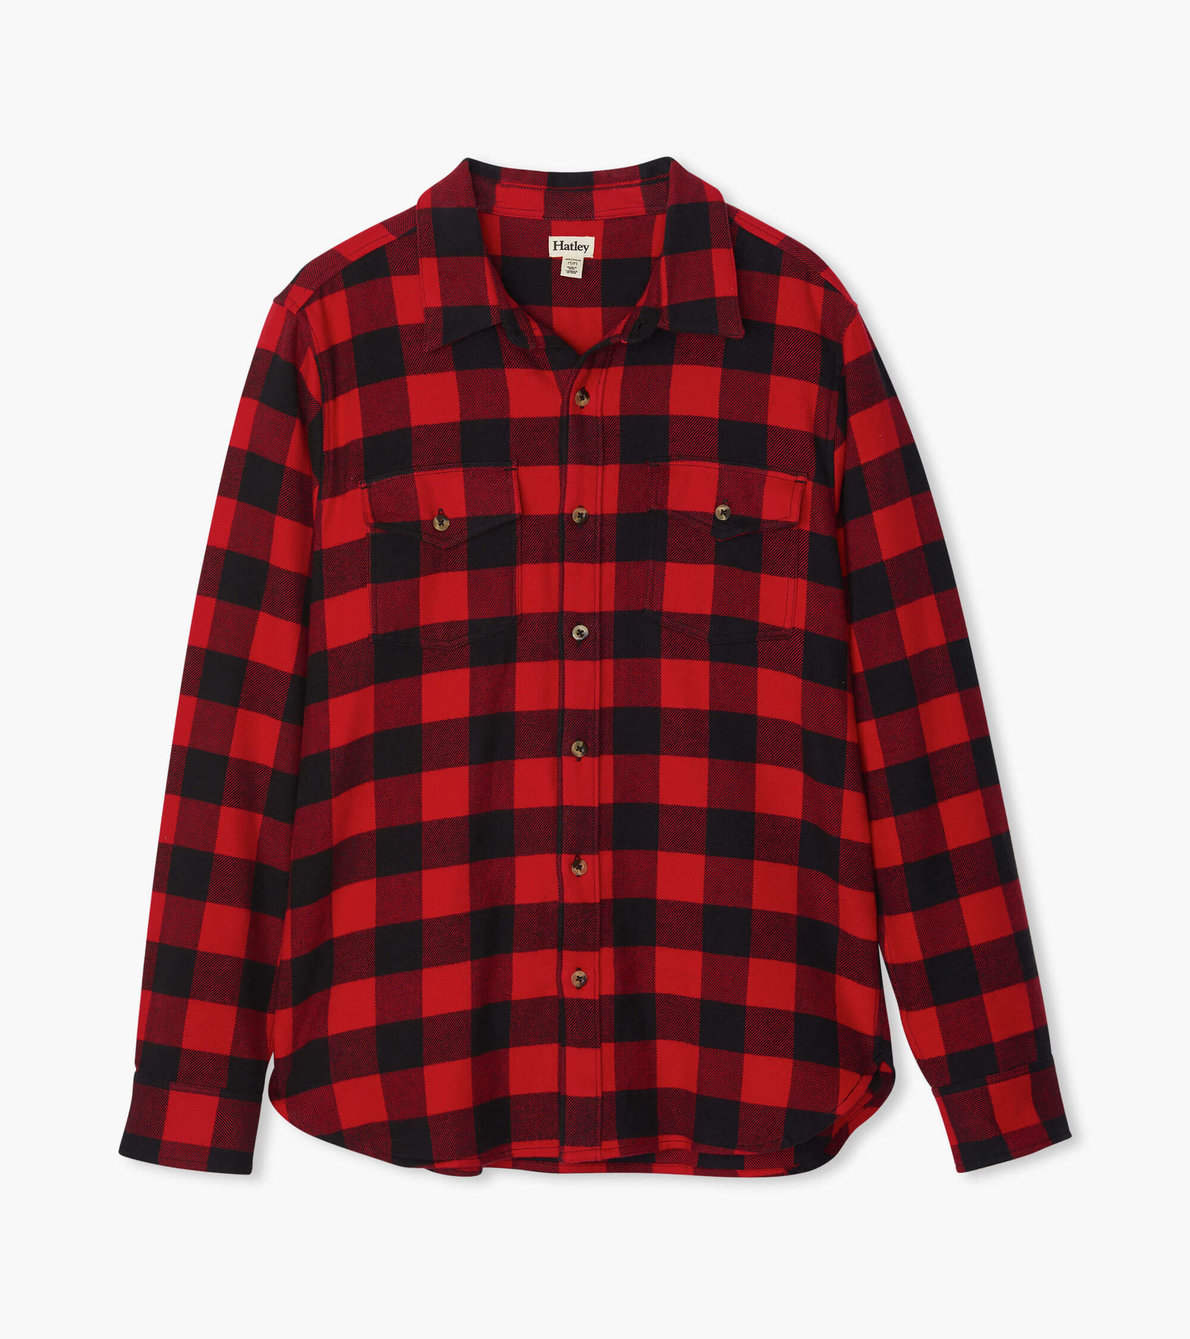 Agrandir l'image de Chemise boutonnée pour homme collection Heritage – Tartan rouge et noir